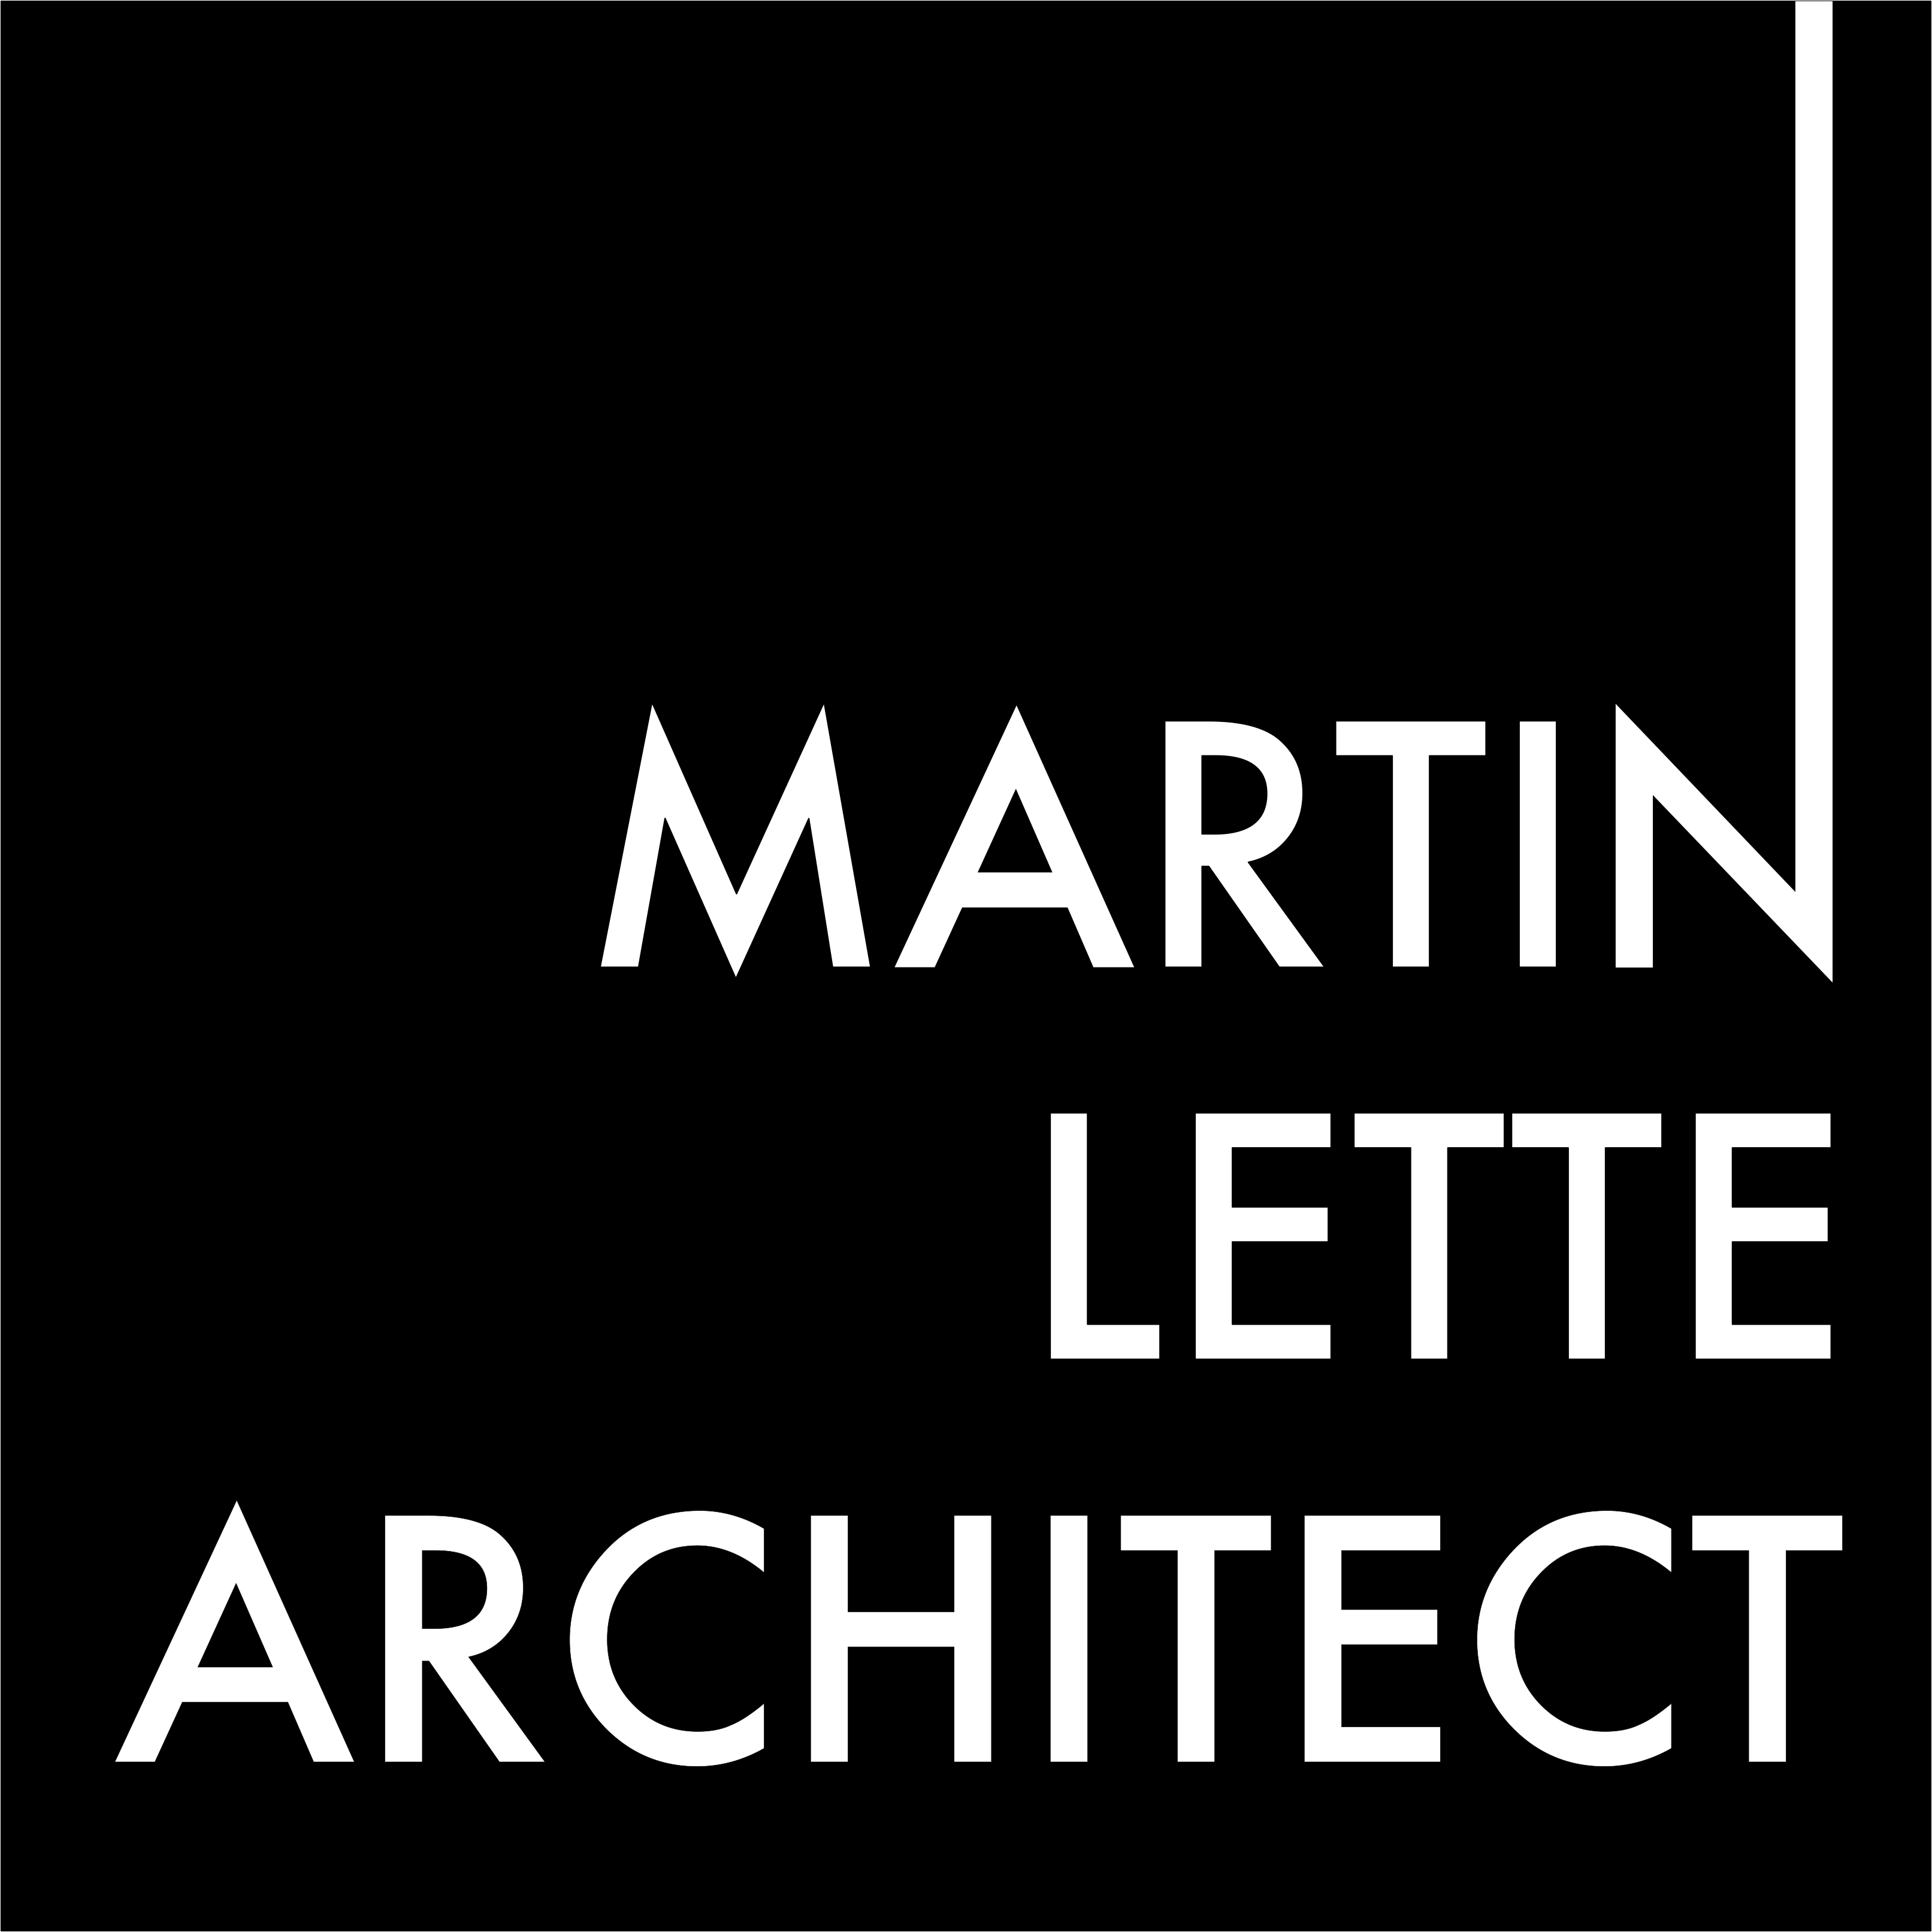 Martin Lette Architect